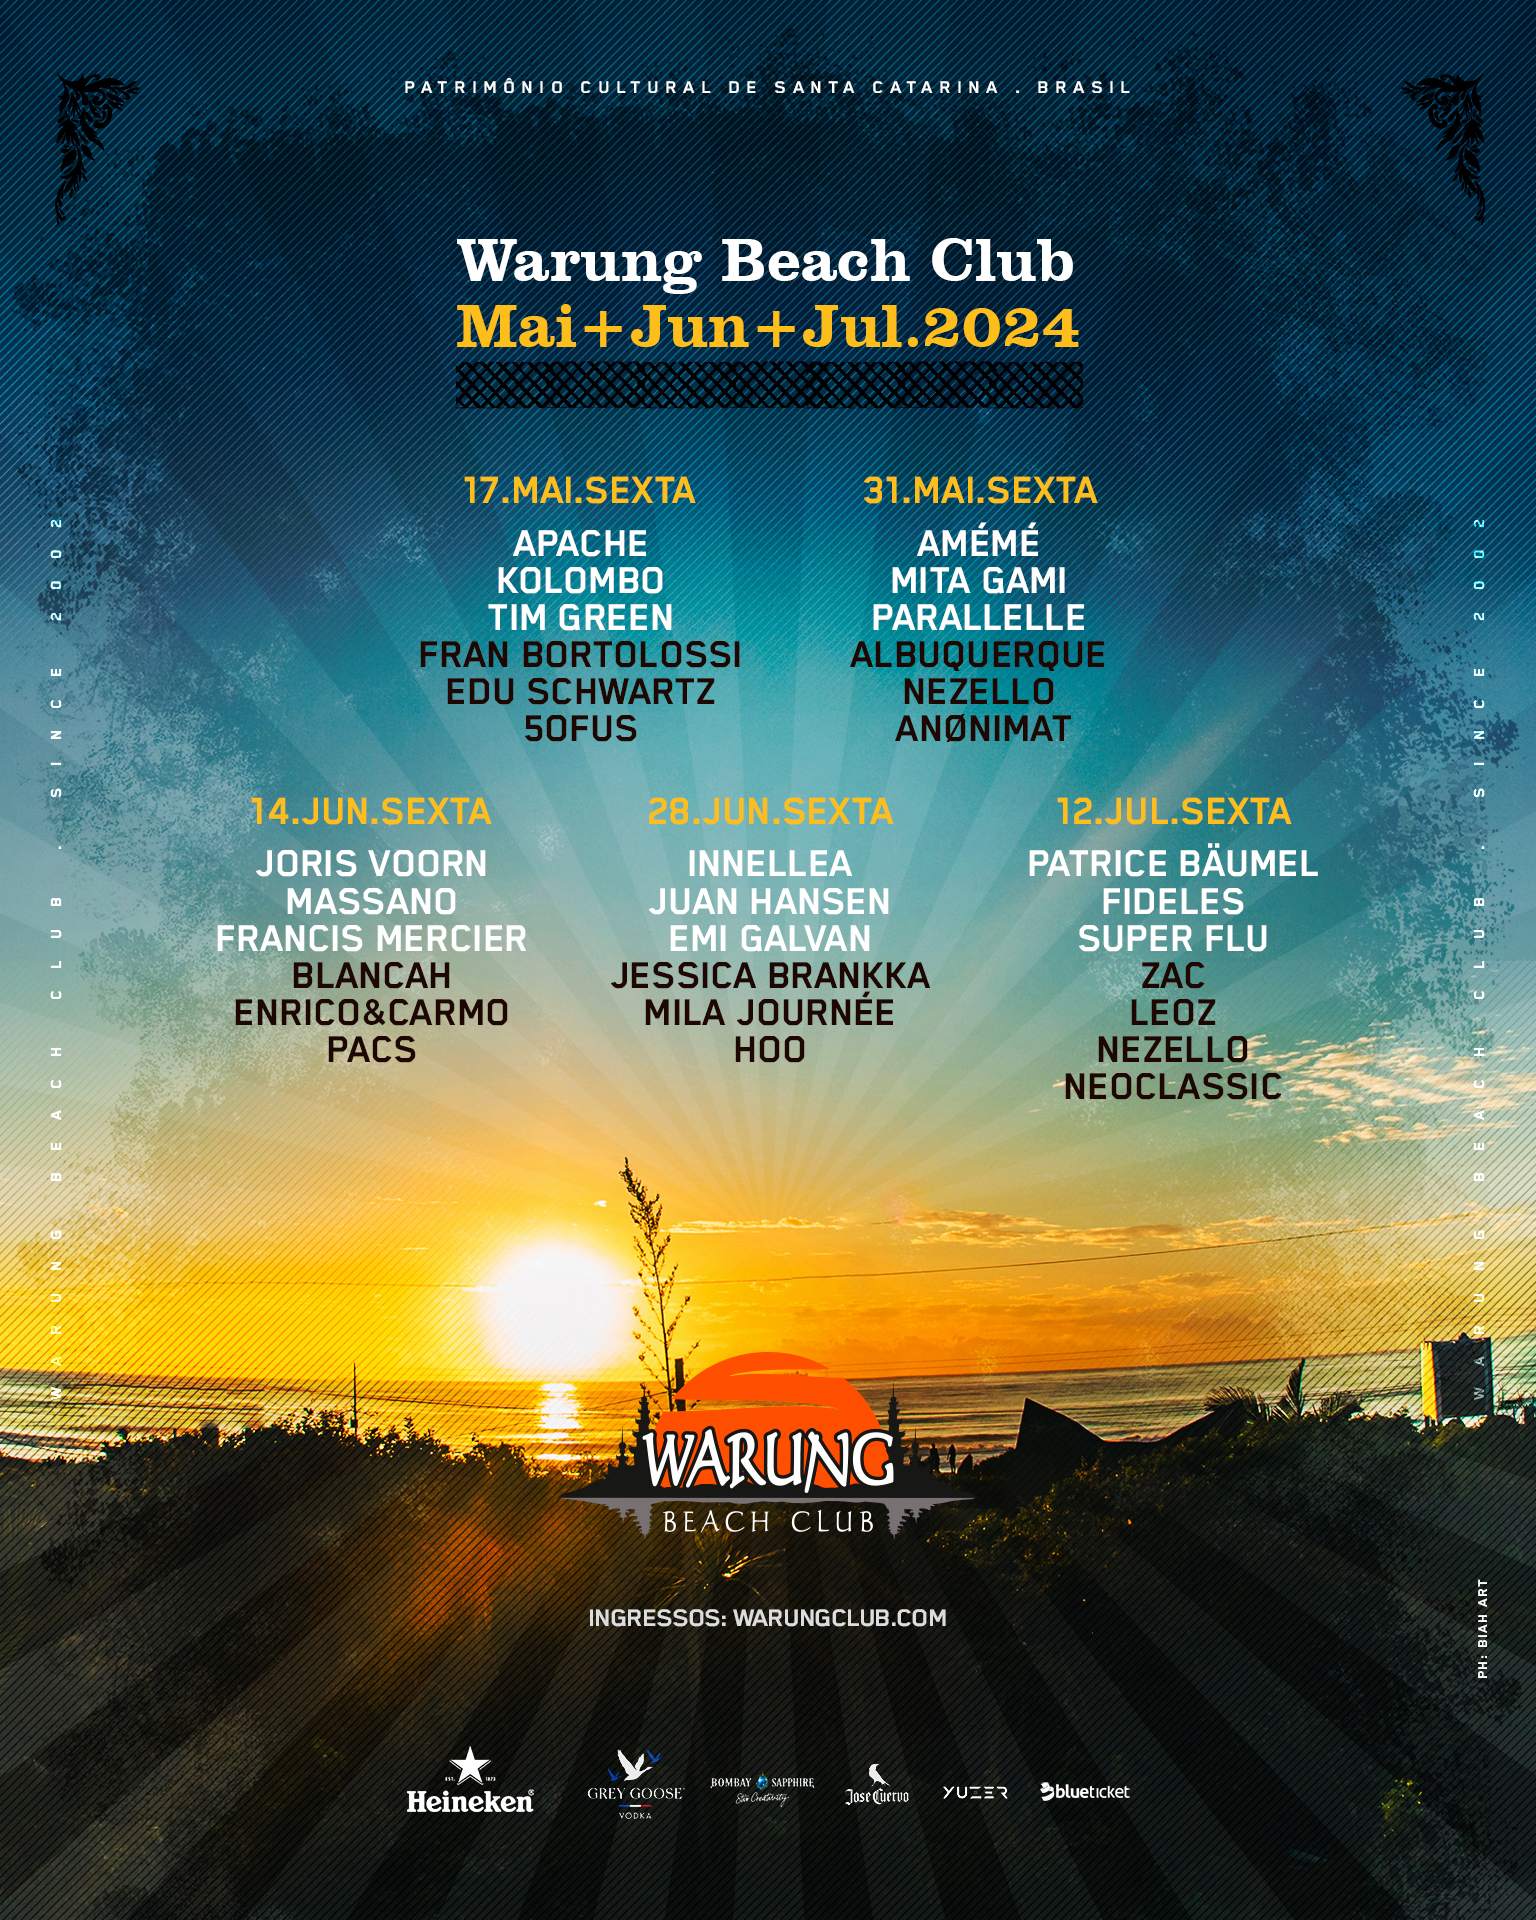 Warung Beach Club with AMÉMÉ, Mita Gami, Parallelle - Página frontal